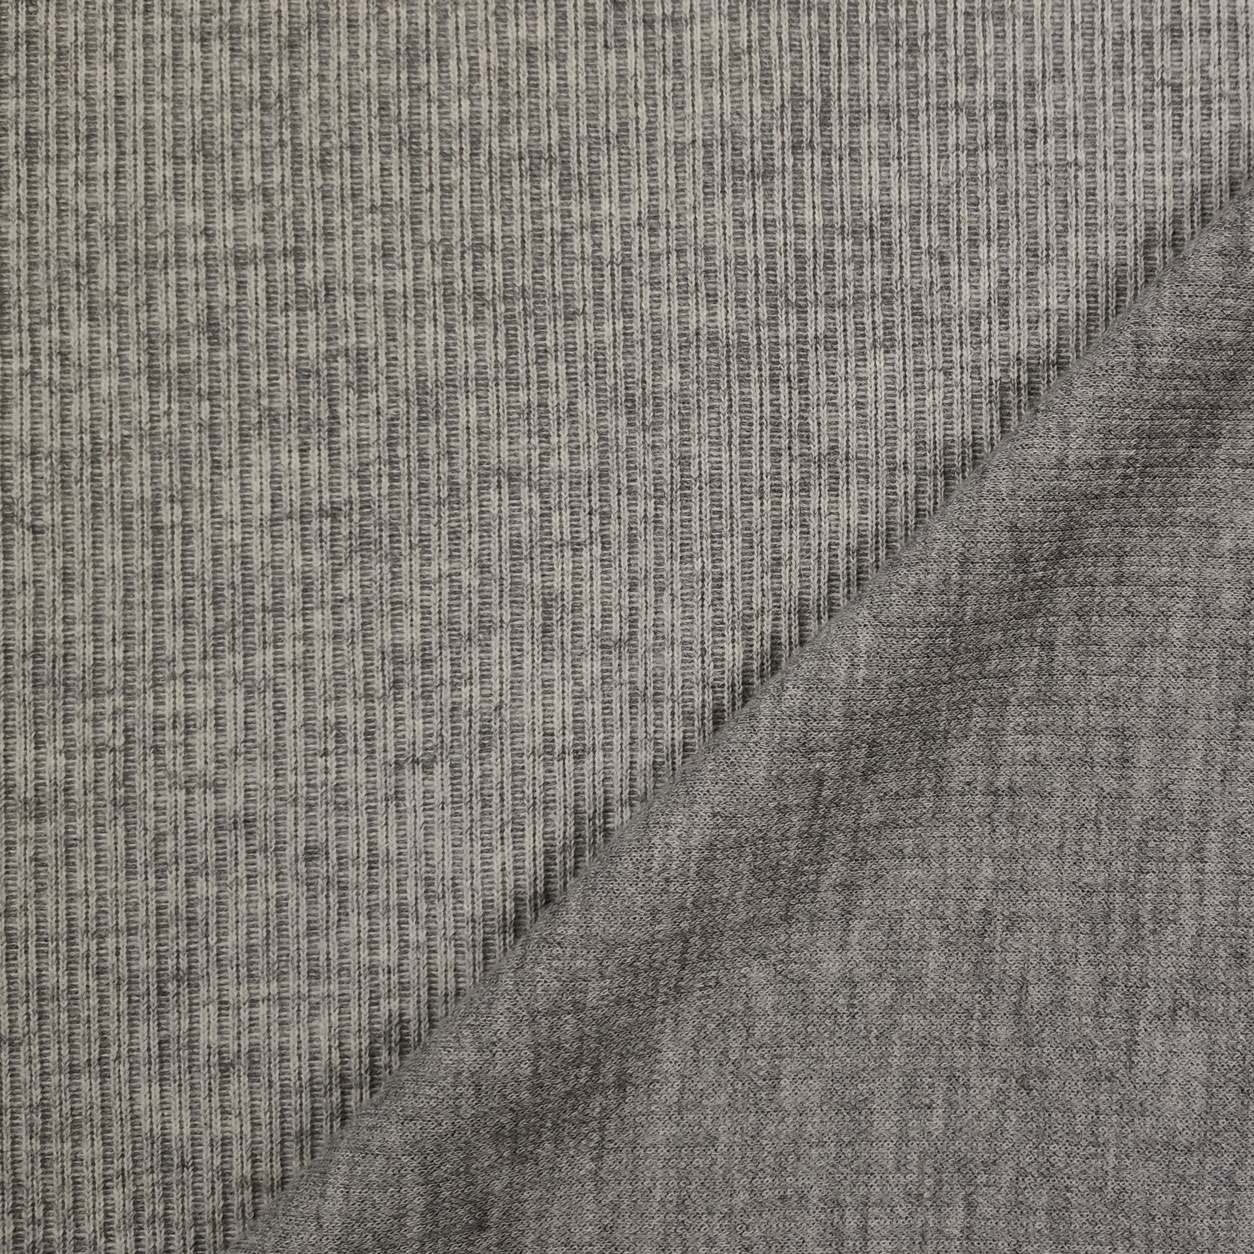 tessuto maglia canettata grigio